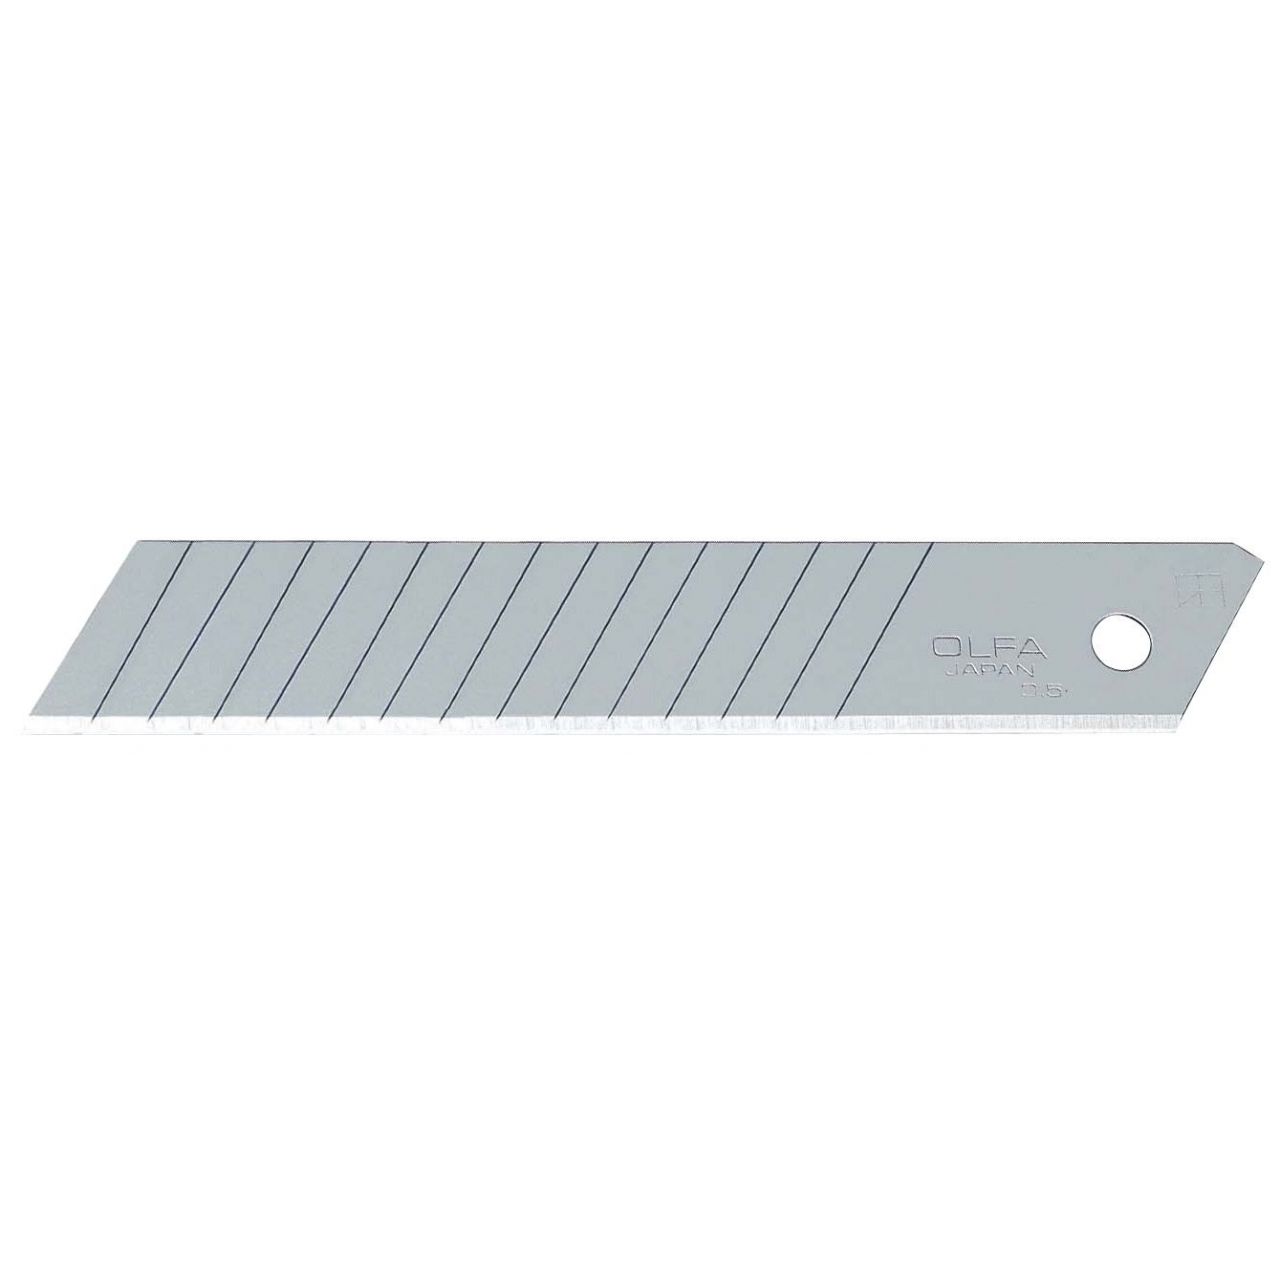 Pack de 10 cuchillas troceables 18 mm doble segmento plateadas